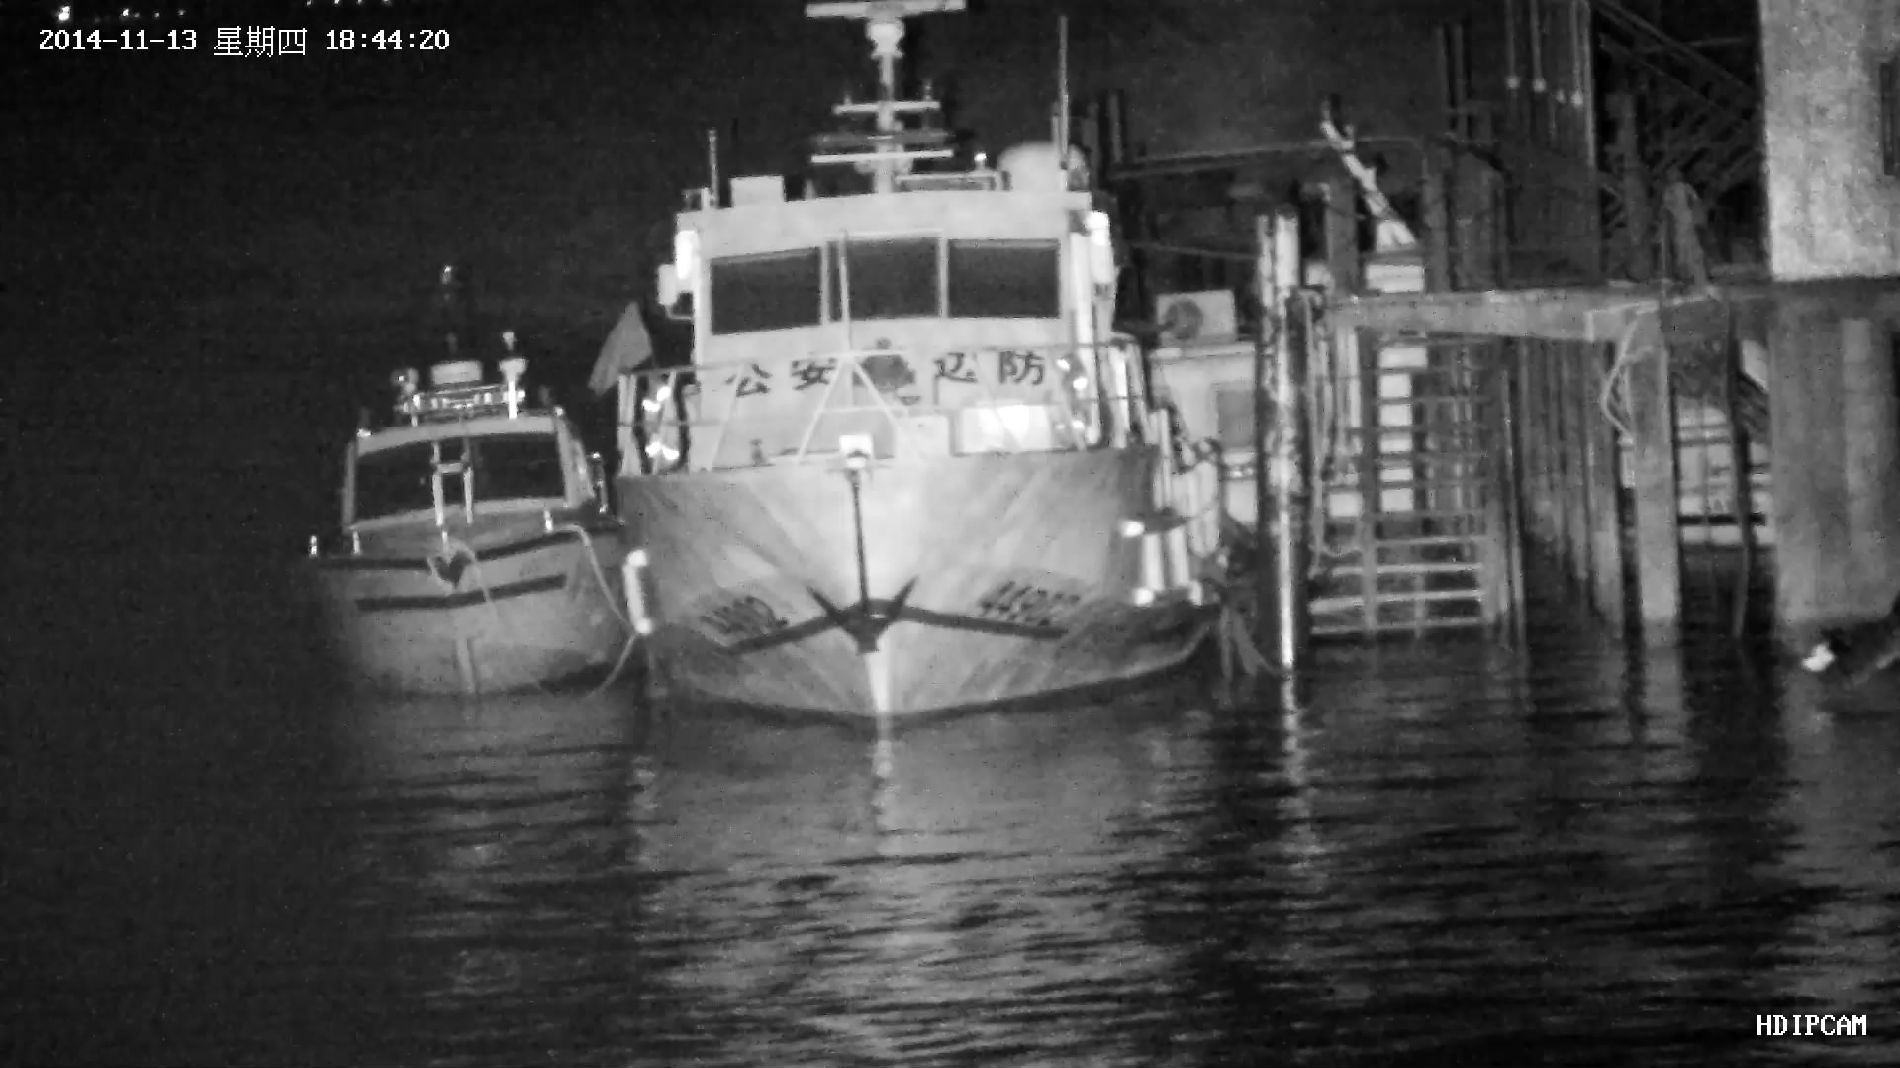 数字航道监控、海洋与渔业监控激光夜视云台透雾摄像机